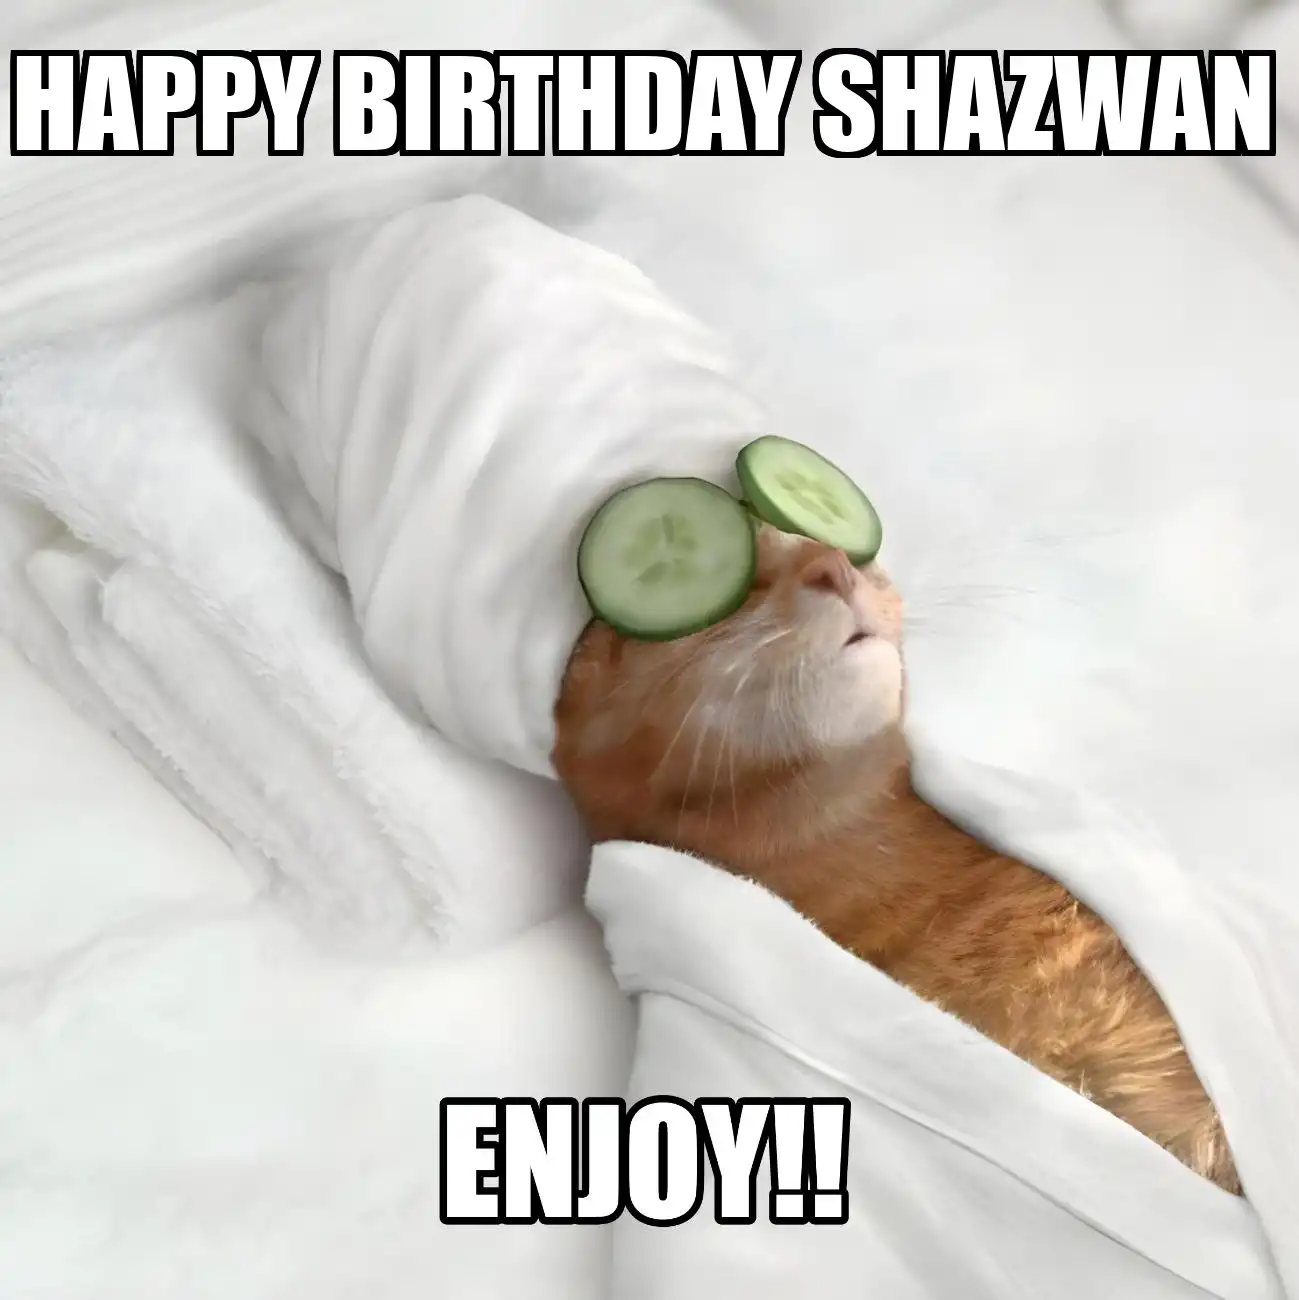 Happy Birthday Shazwan Enjoy Cat Meme